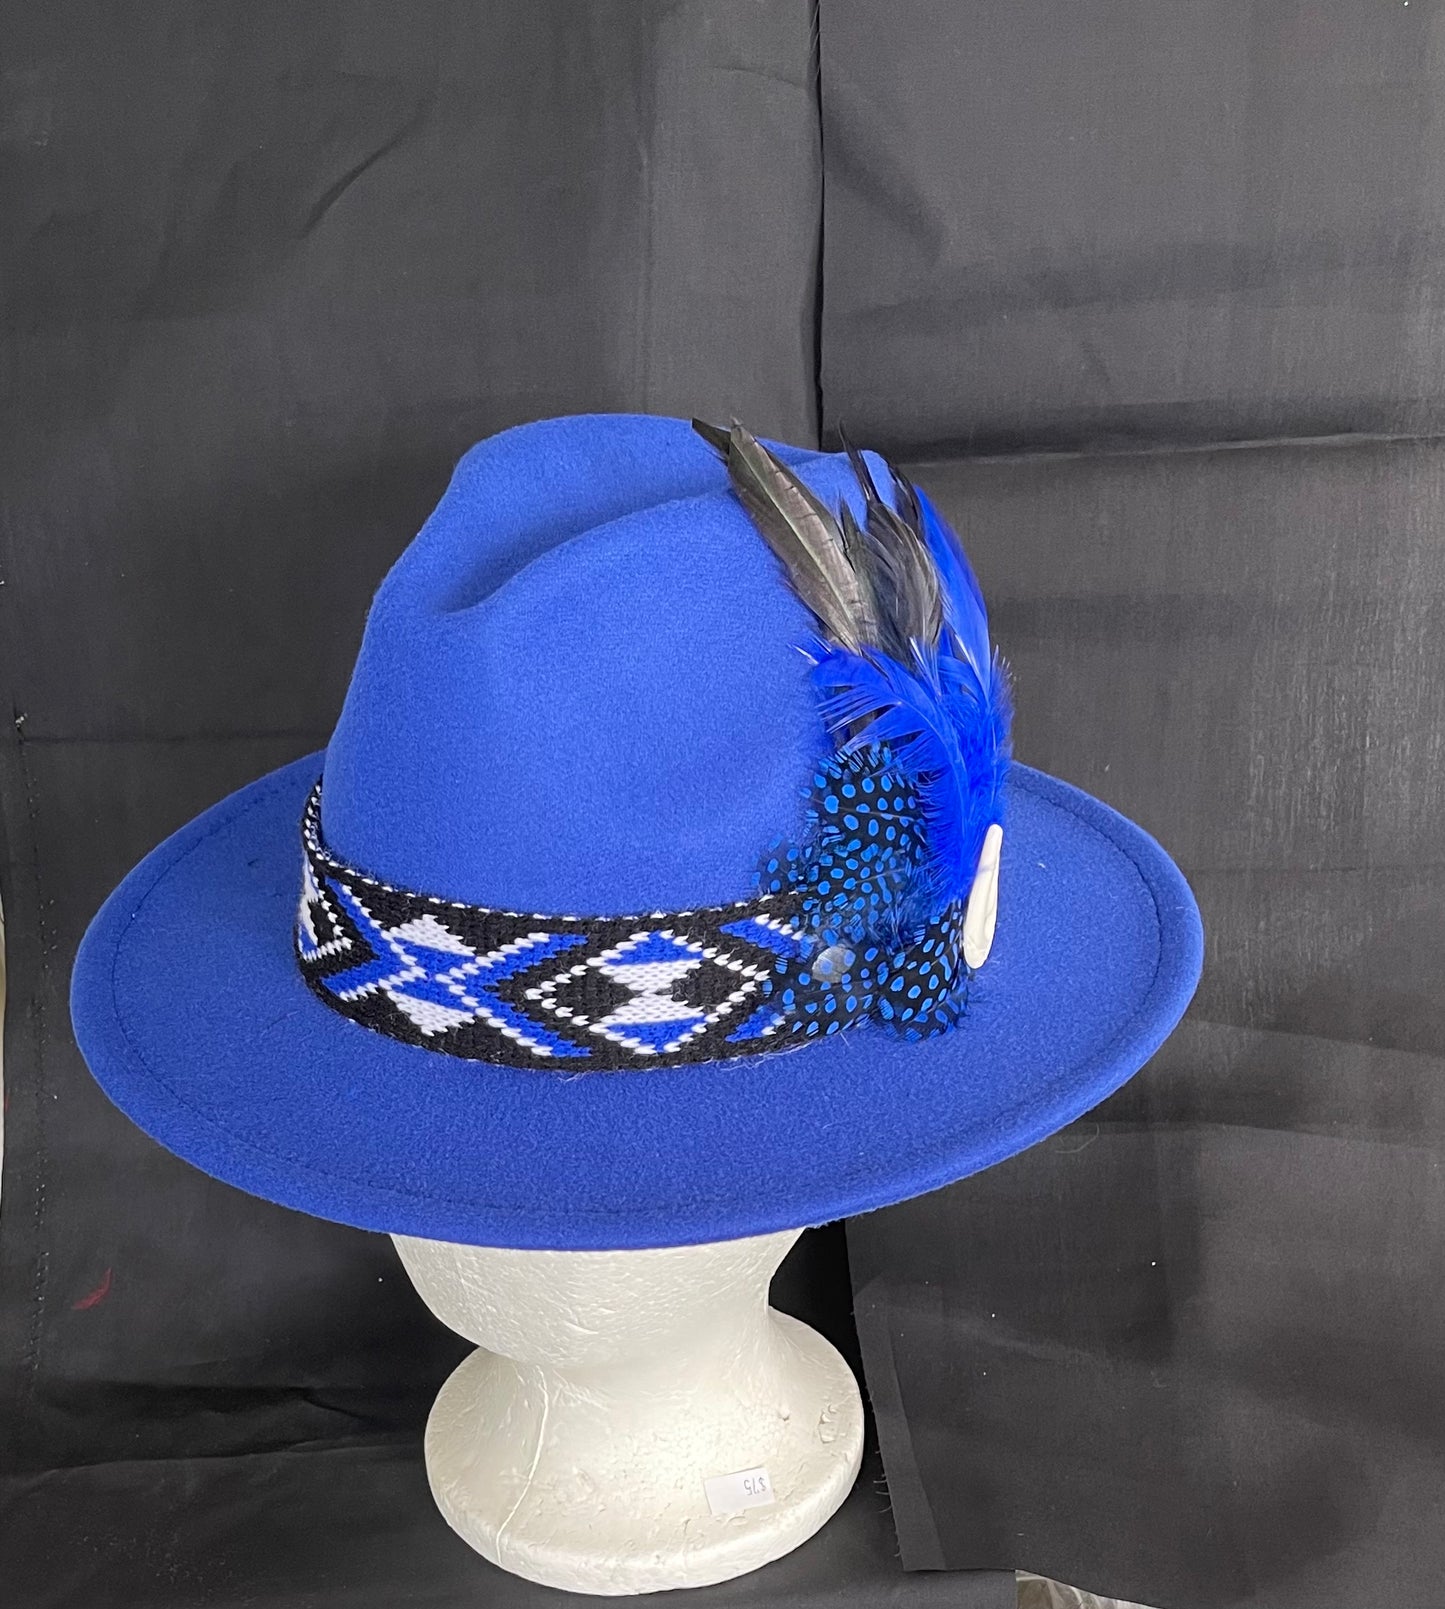 Potae - Royal Blue Fedora Felt Hat